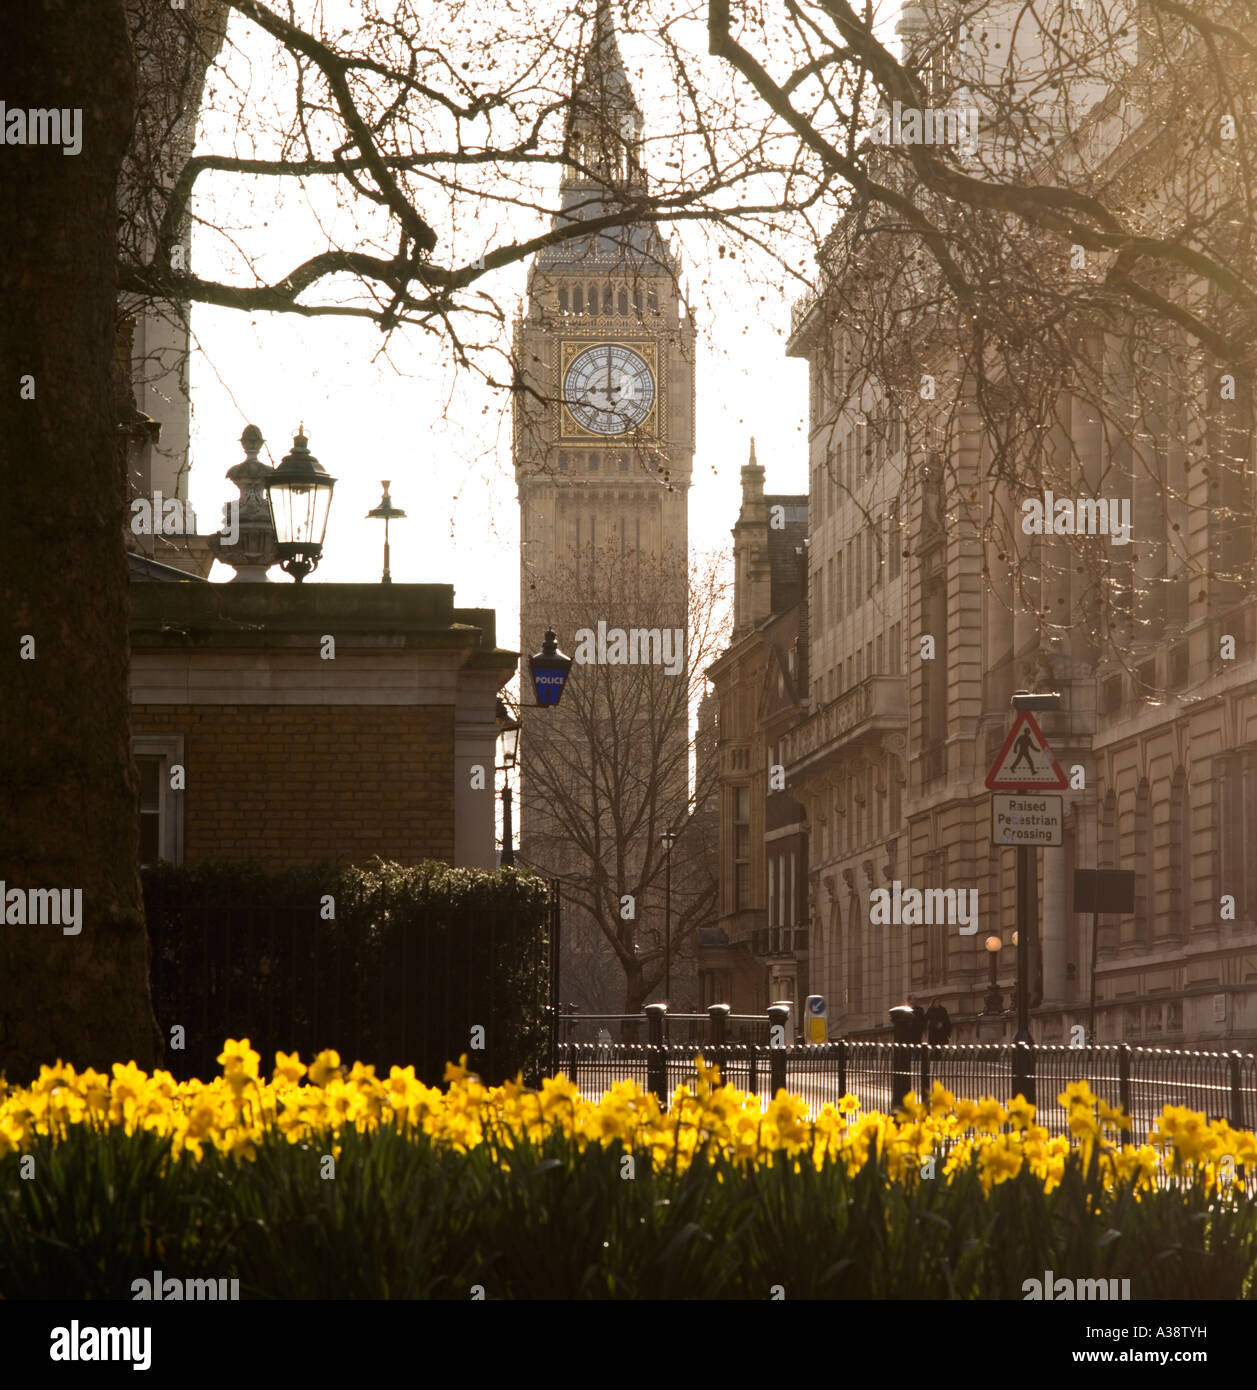 Die Uhr Turm von Big Ben Blick durch gelbe Feder Narzissen im St. James Park London England UK Stockfoto